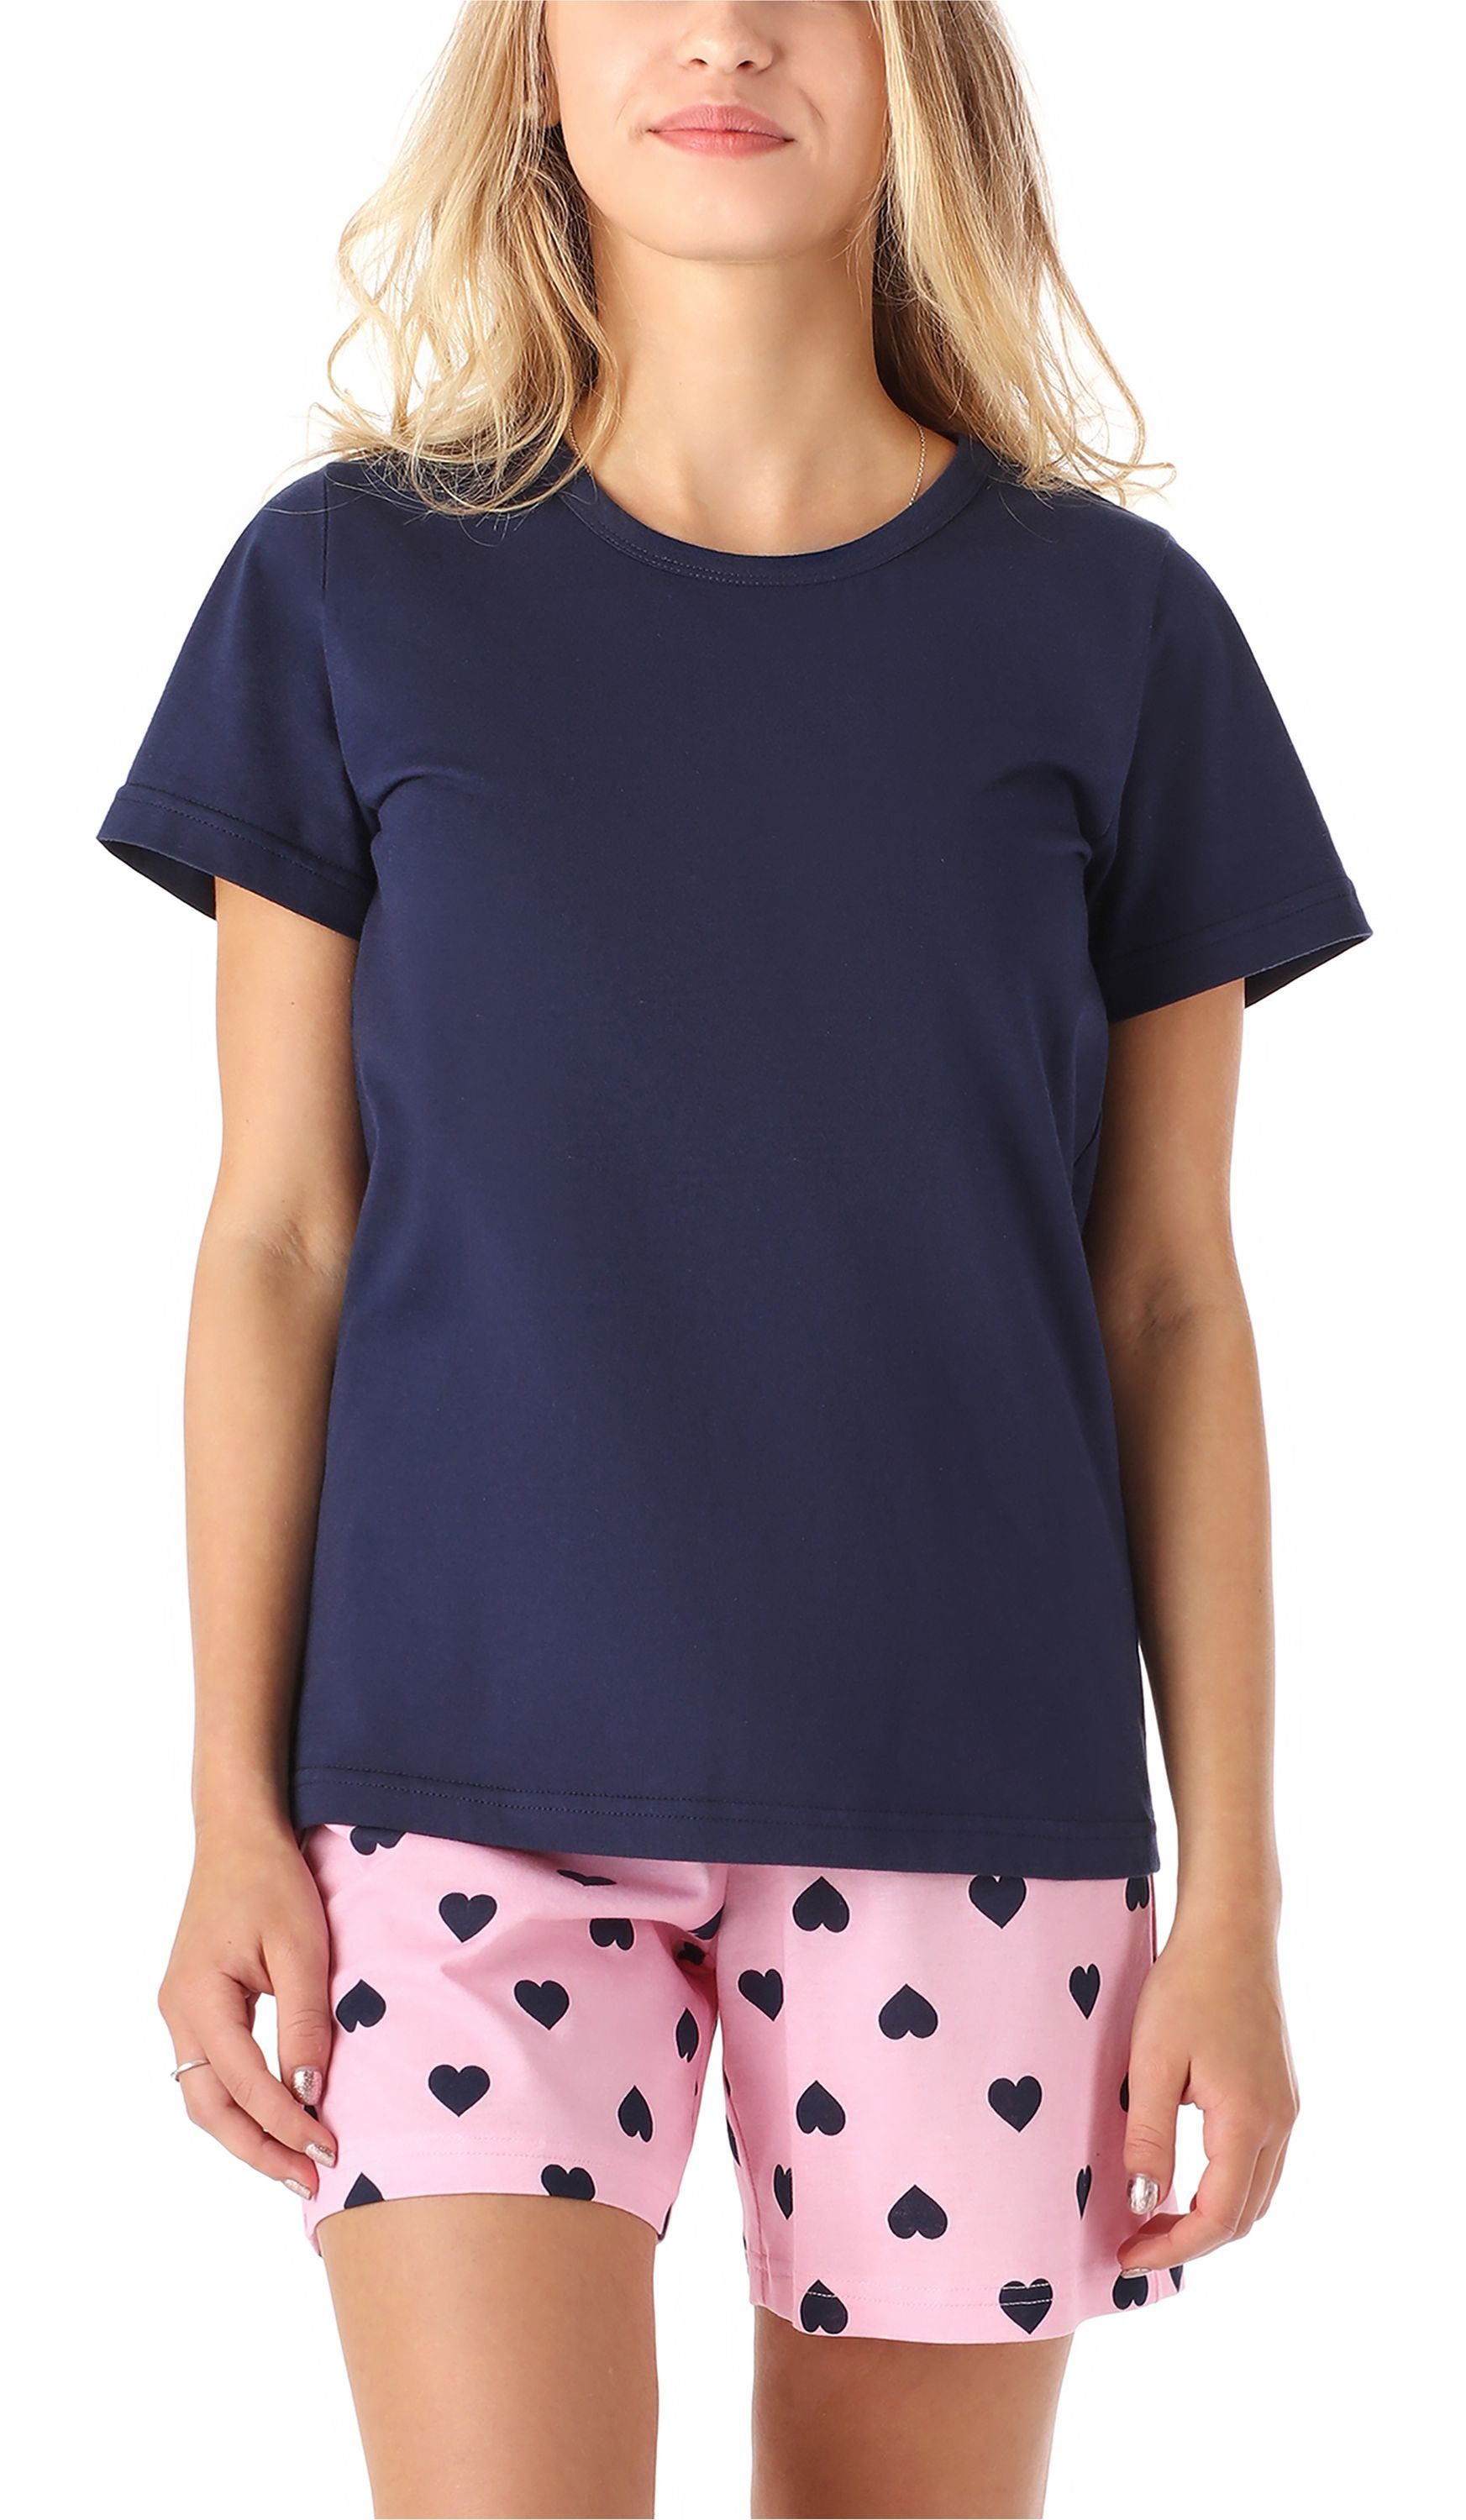 Merry Style Schlafanzug Mädchen Schlafanzüge Kurz aus Baumwolle Pyjama Set MS10-265 Marine Herz